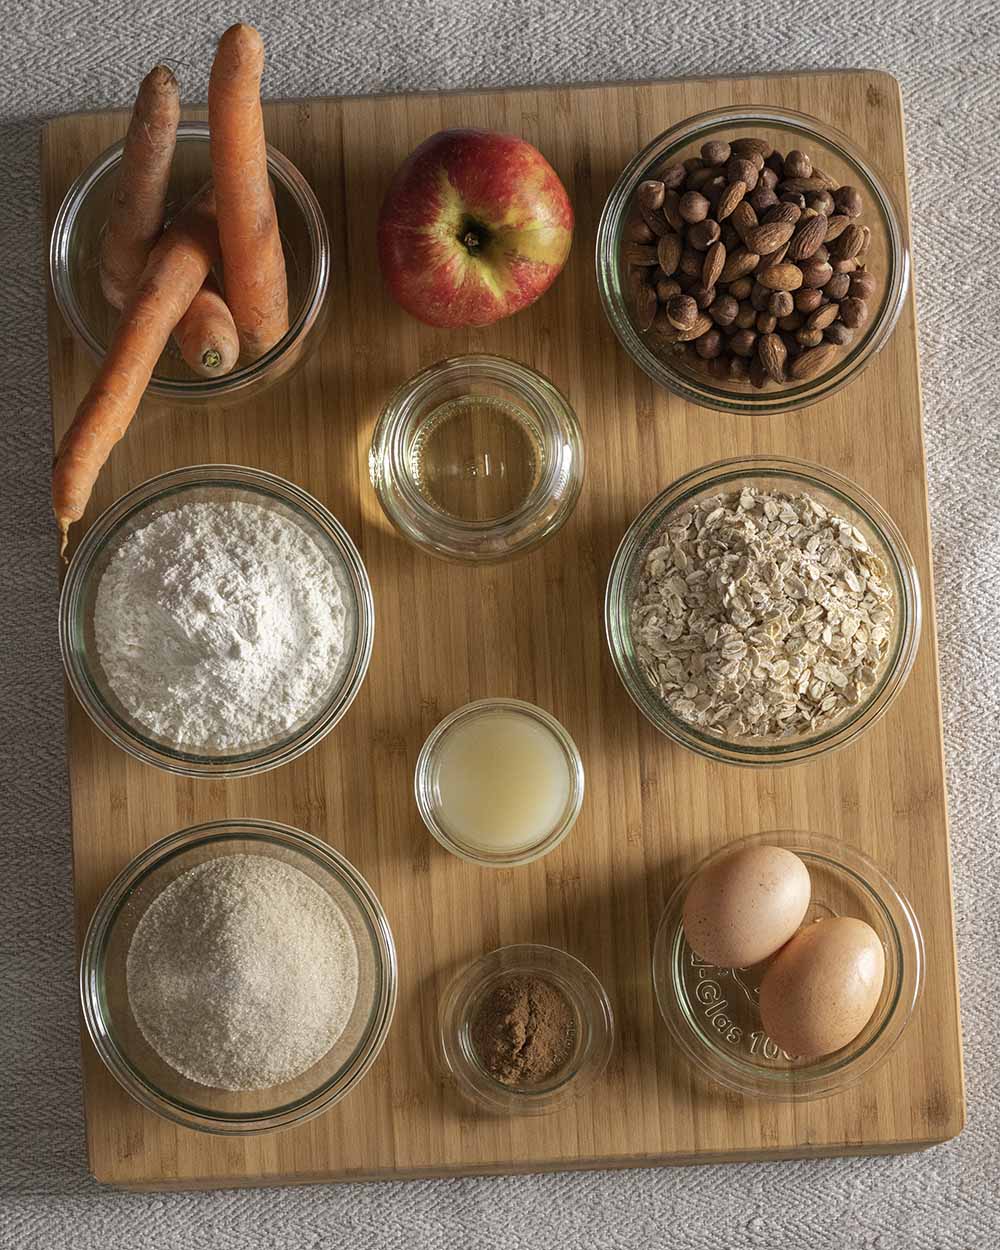 Die Zutaten für unsere saftigen Möhren-Muffins: Möhren, Apfel, Nüsse, Öl, Mehl, Haferflocken, Zitrone, Zucker, Zimt und Eier